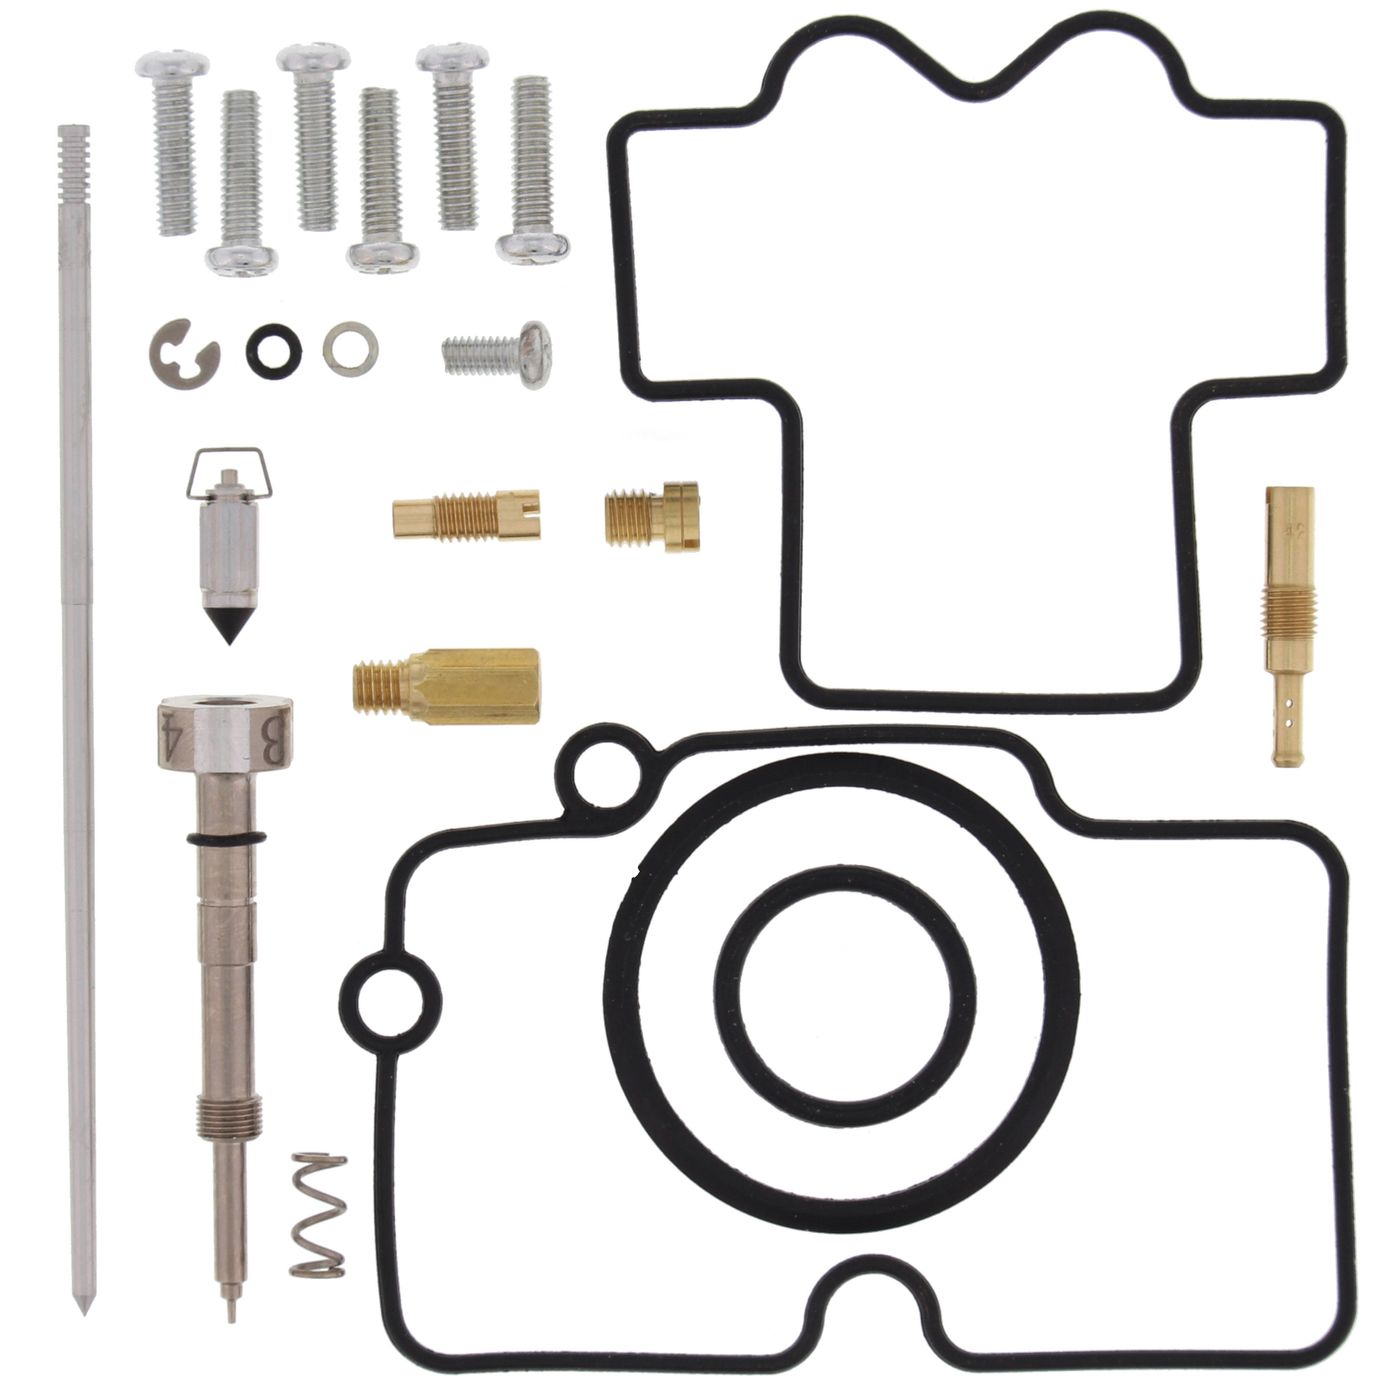 Wrp Carb Repair Kits - WRP261452 image